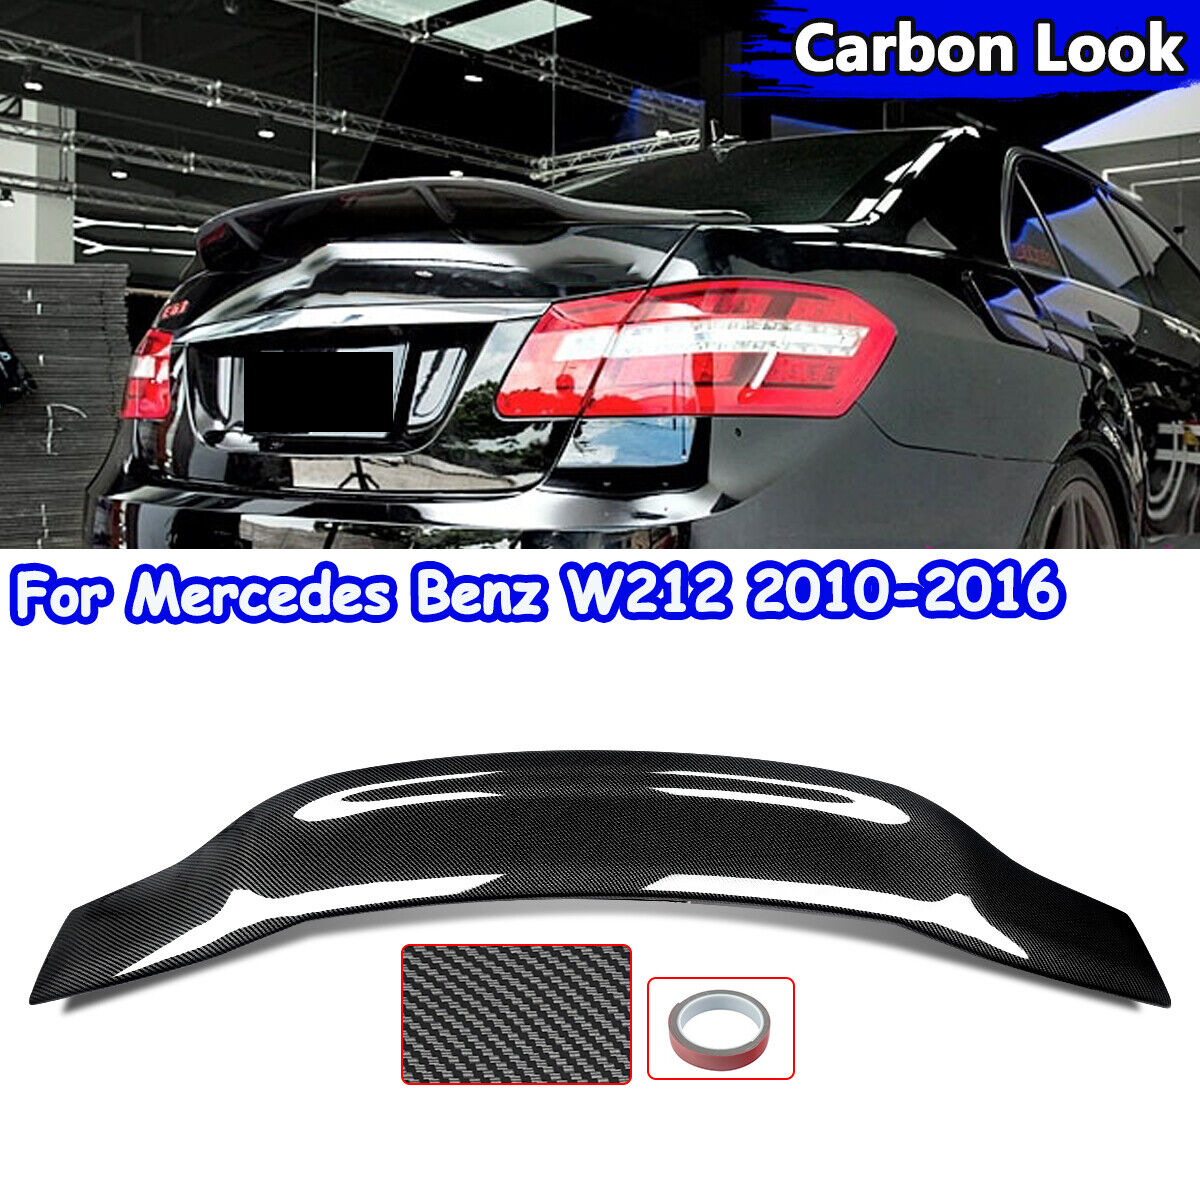 For Mercedes Benz W212 E350 E550 E63 AMG Rear Trunk Spoiler 2010-2016 CarbonLook